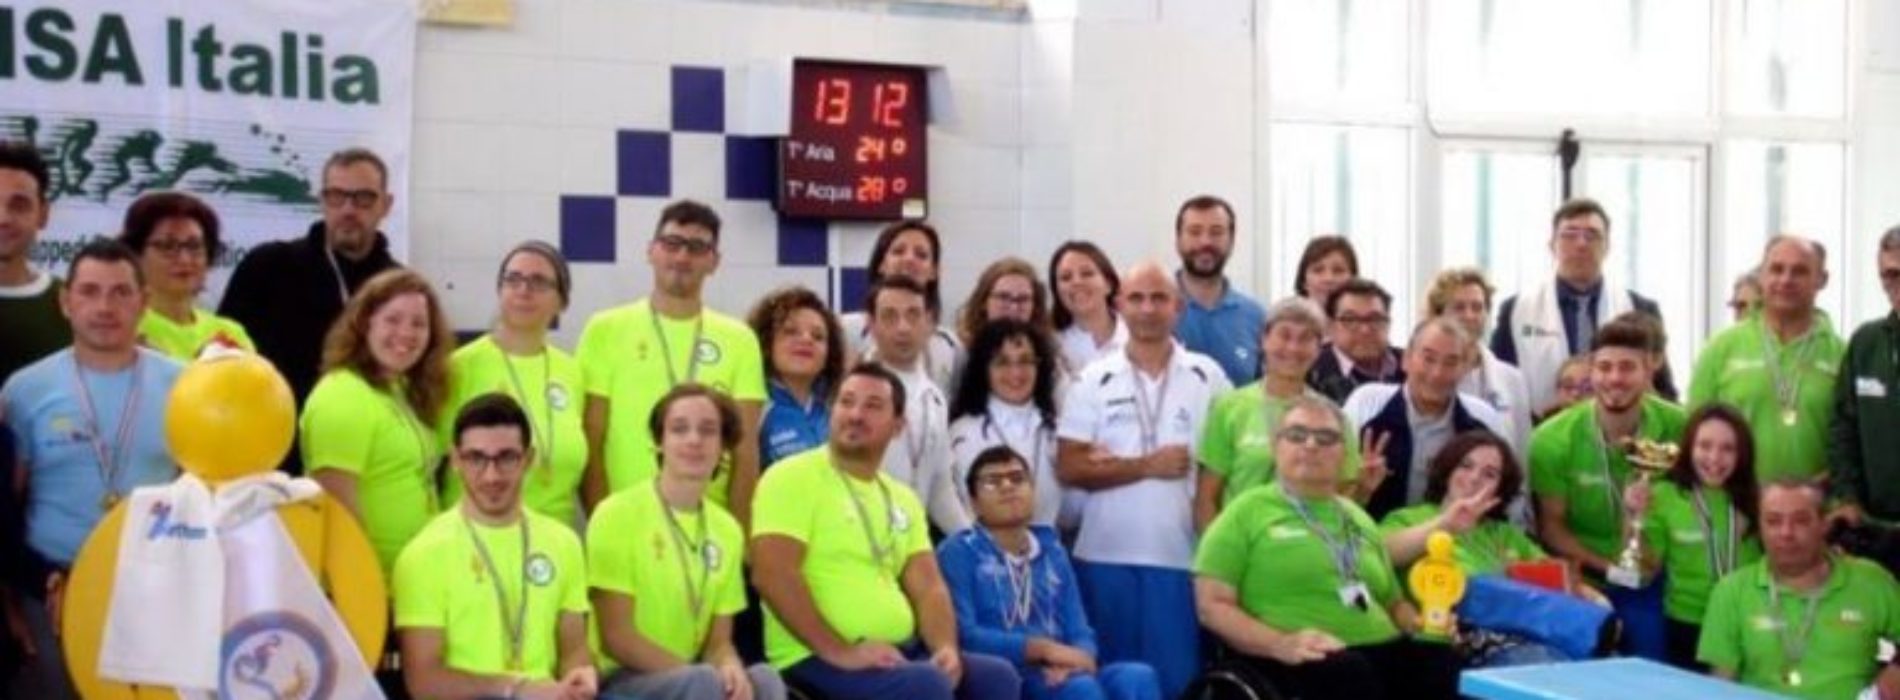 L’ Asd “Project Diver Enna” con il nuoto promuove la solidarietà con la raccolta fondi per Telethon